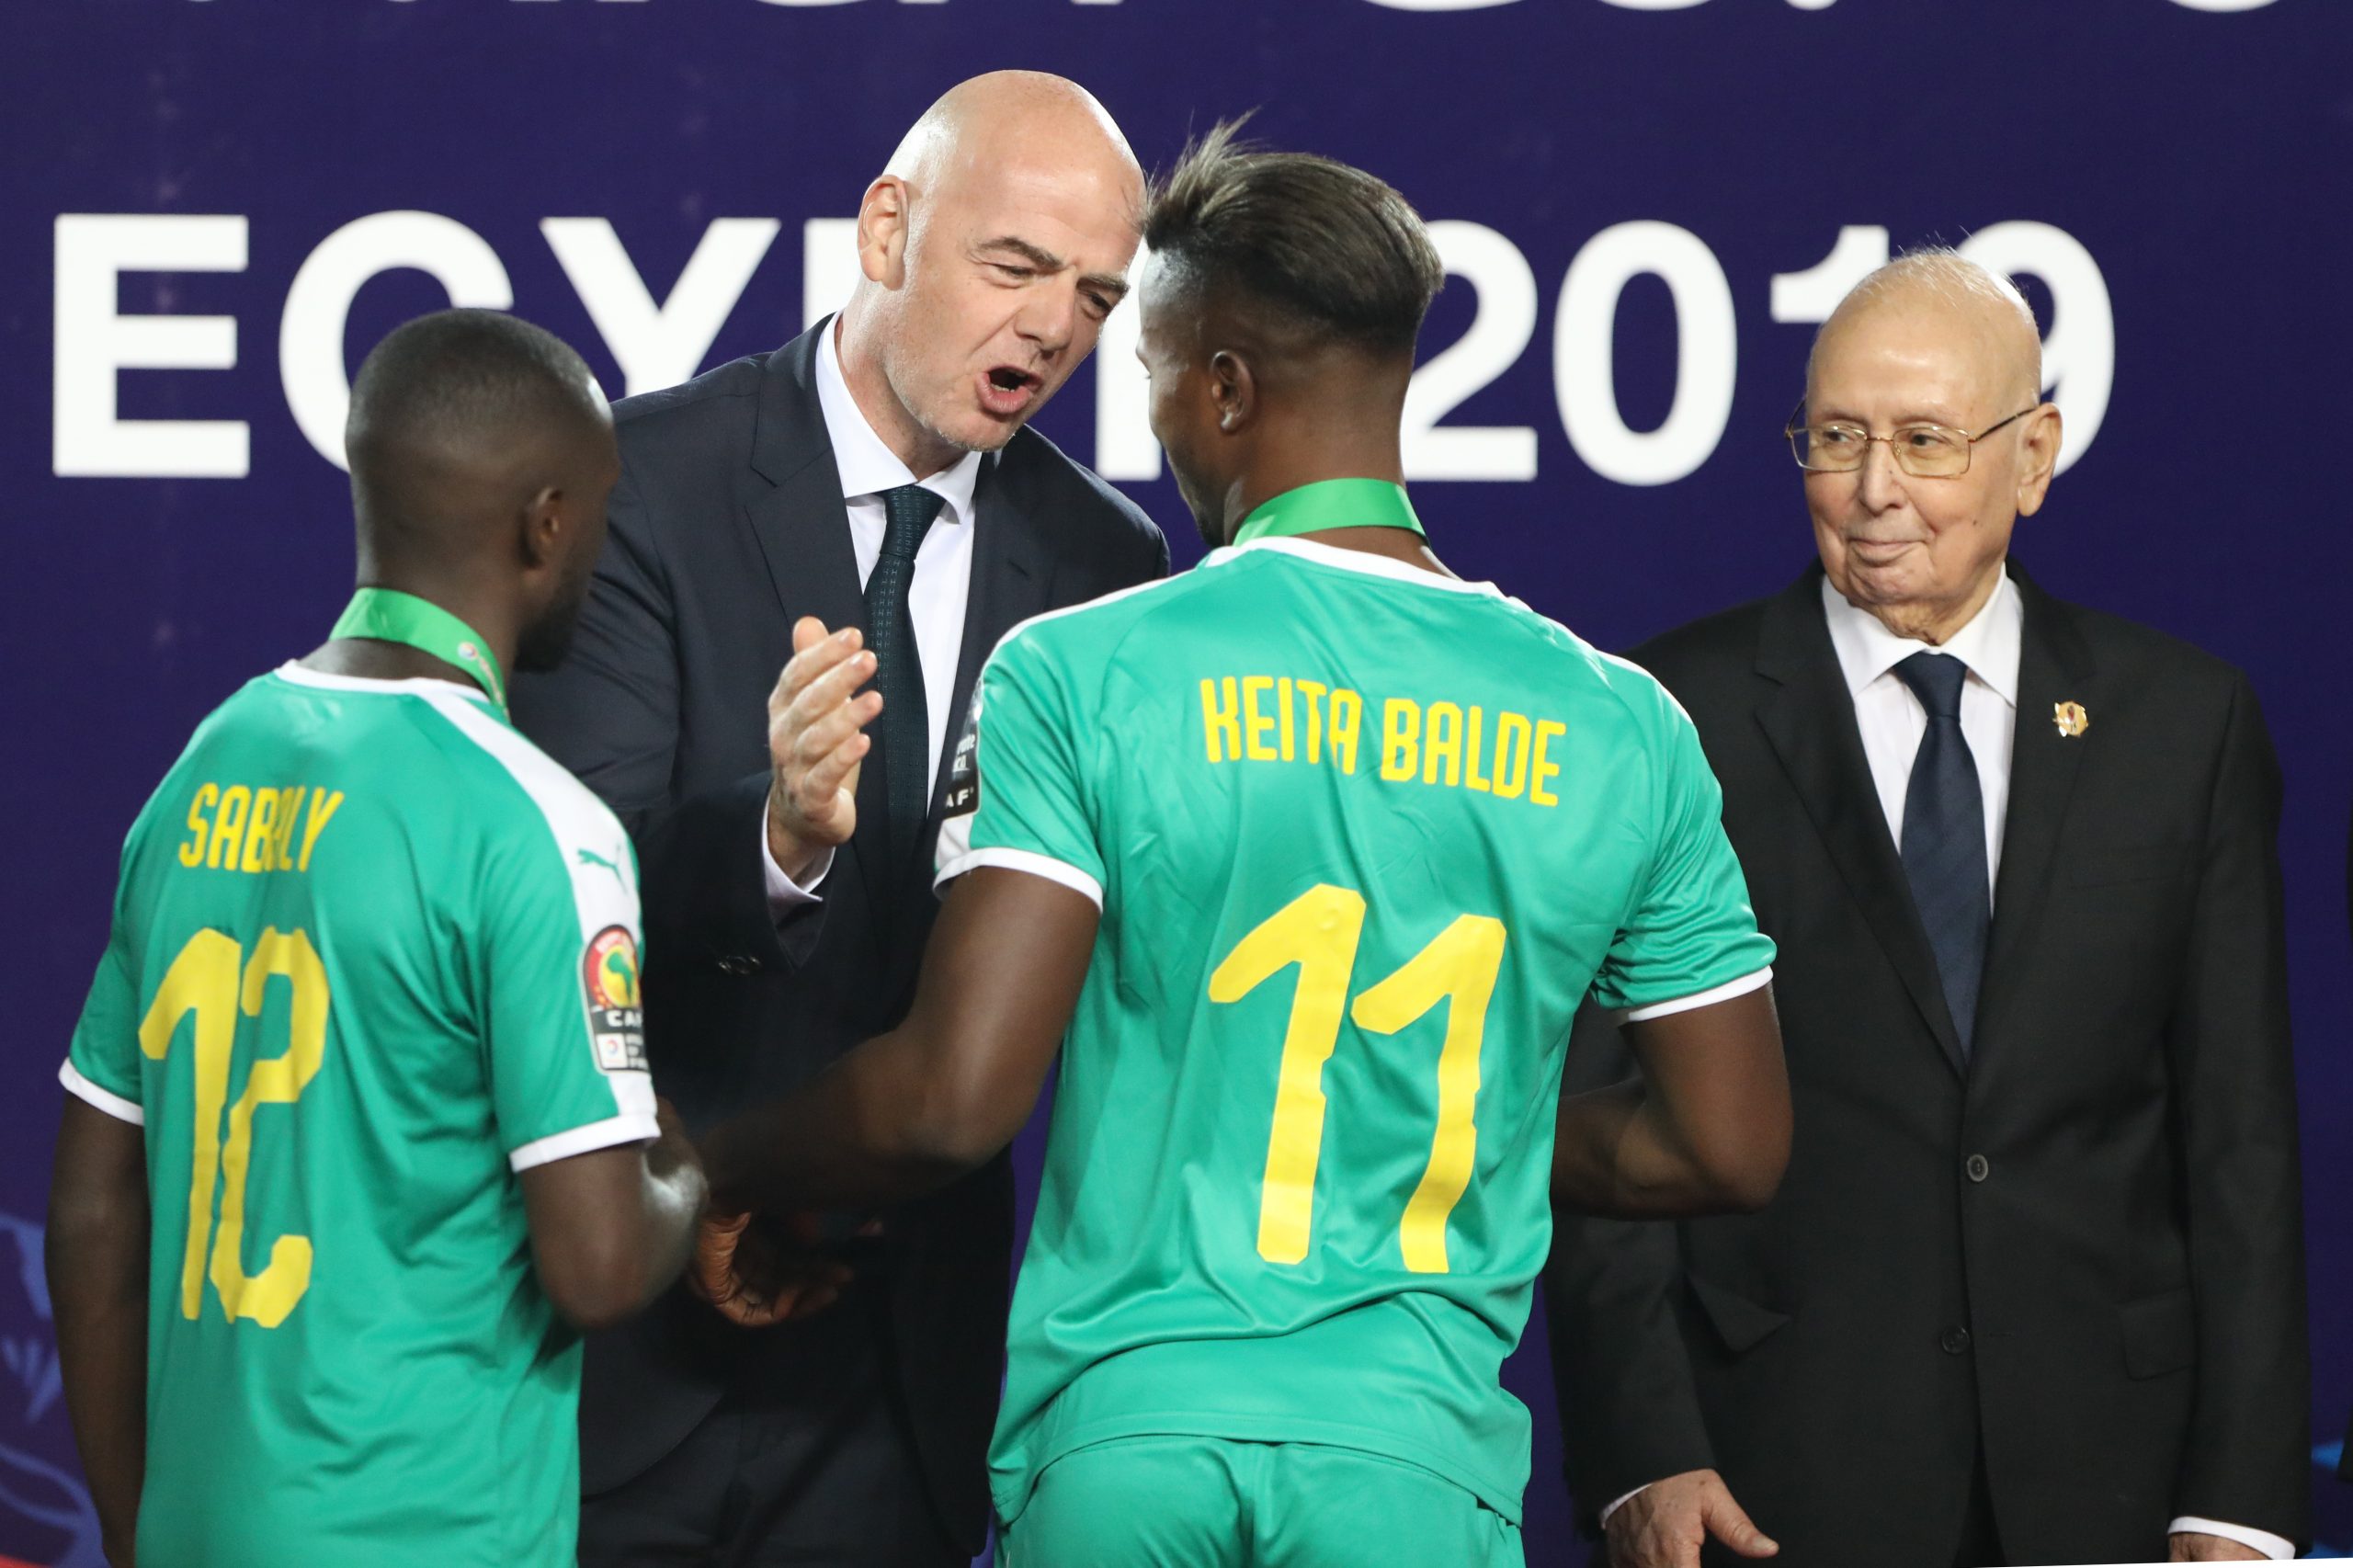 FIFA-Präsident Gianni Infantino klatscht mit dem senegalesischen Nationalspieler Keita Baldé ab.